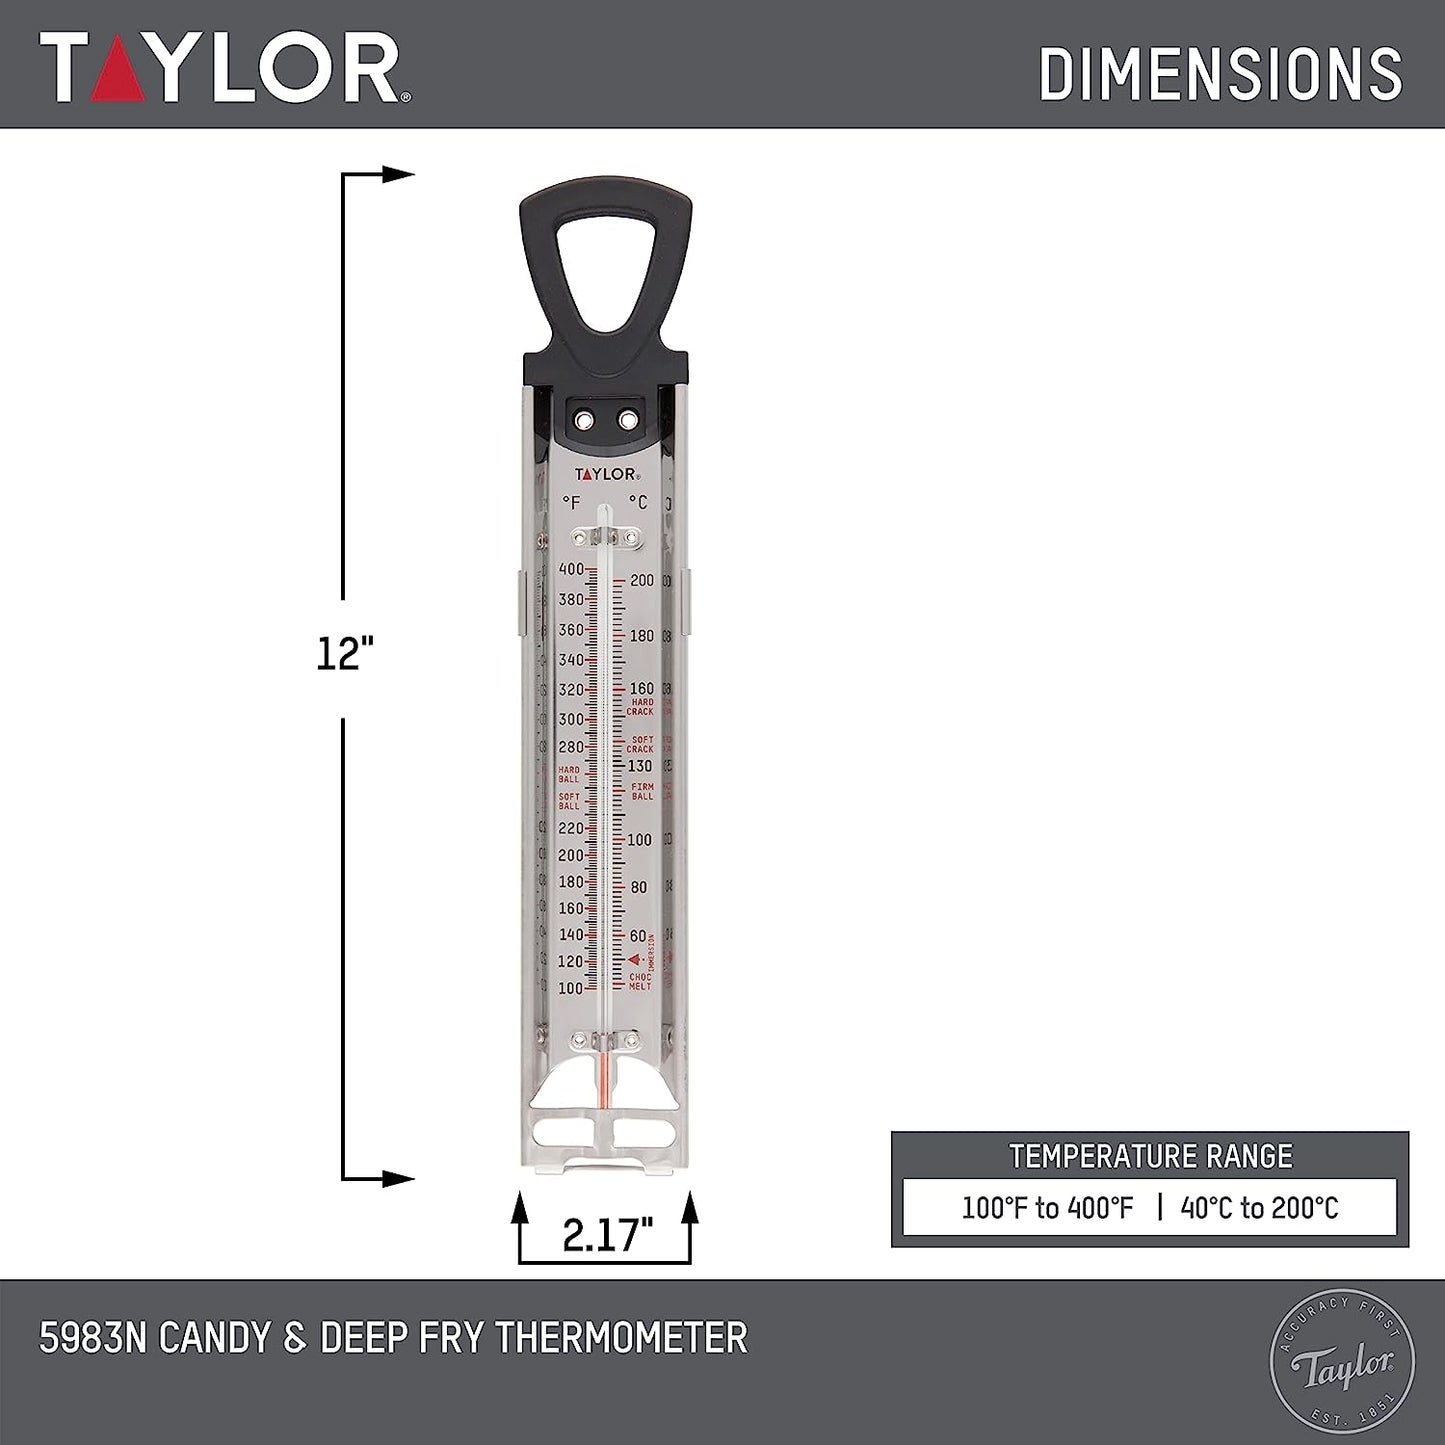 Termometro para caramelo marca Taylor. Ideal para usar en tu cocina. Reposteria